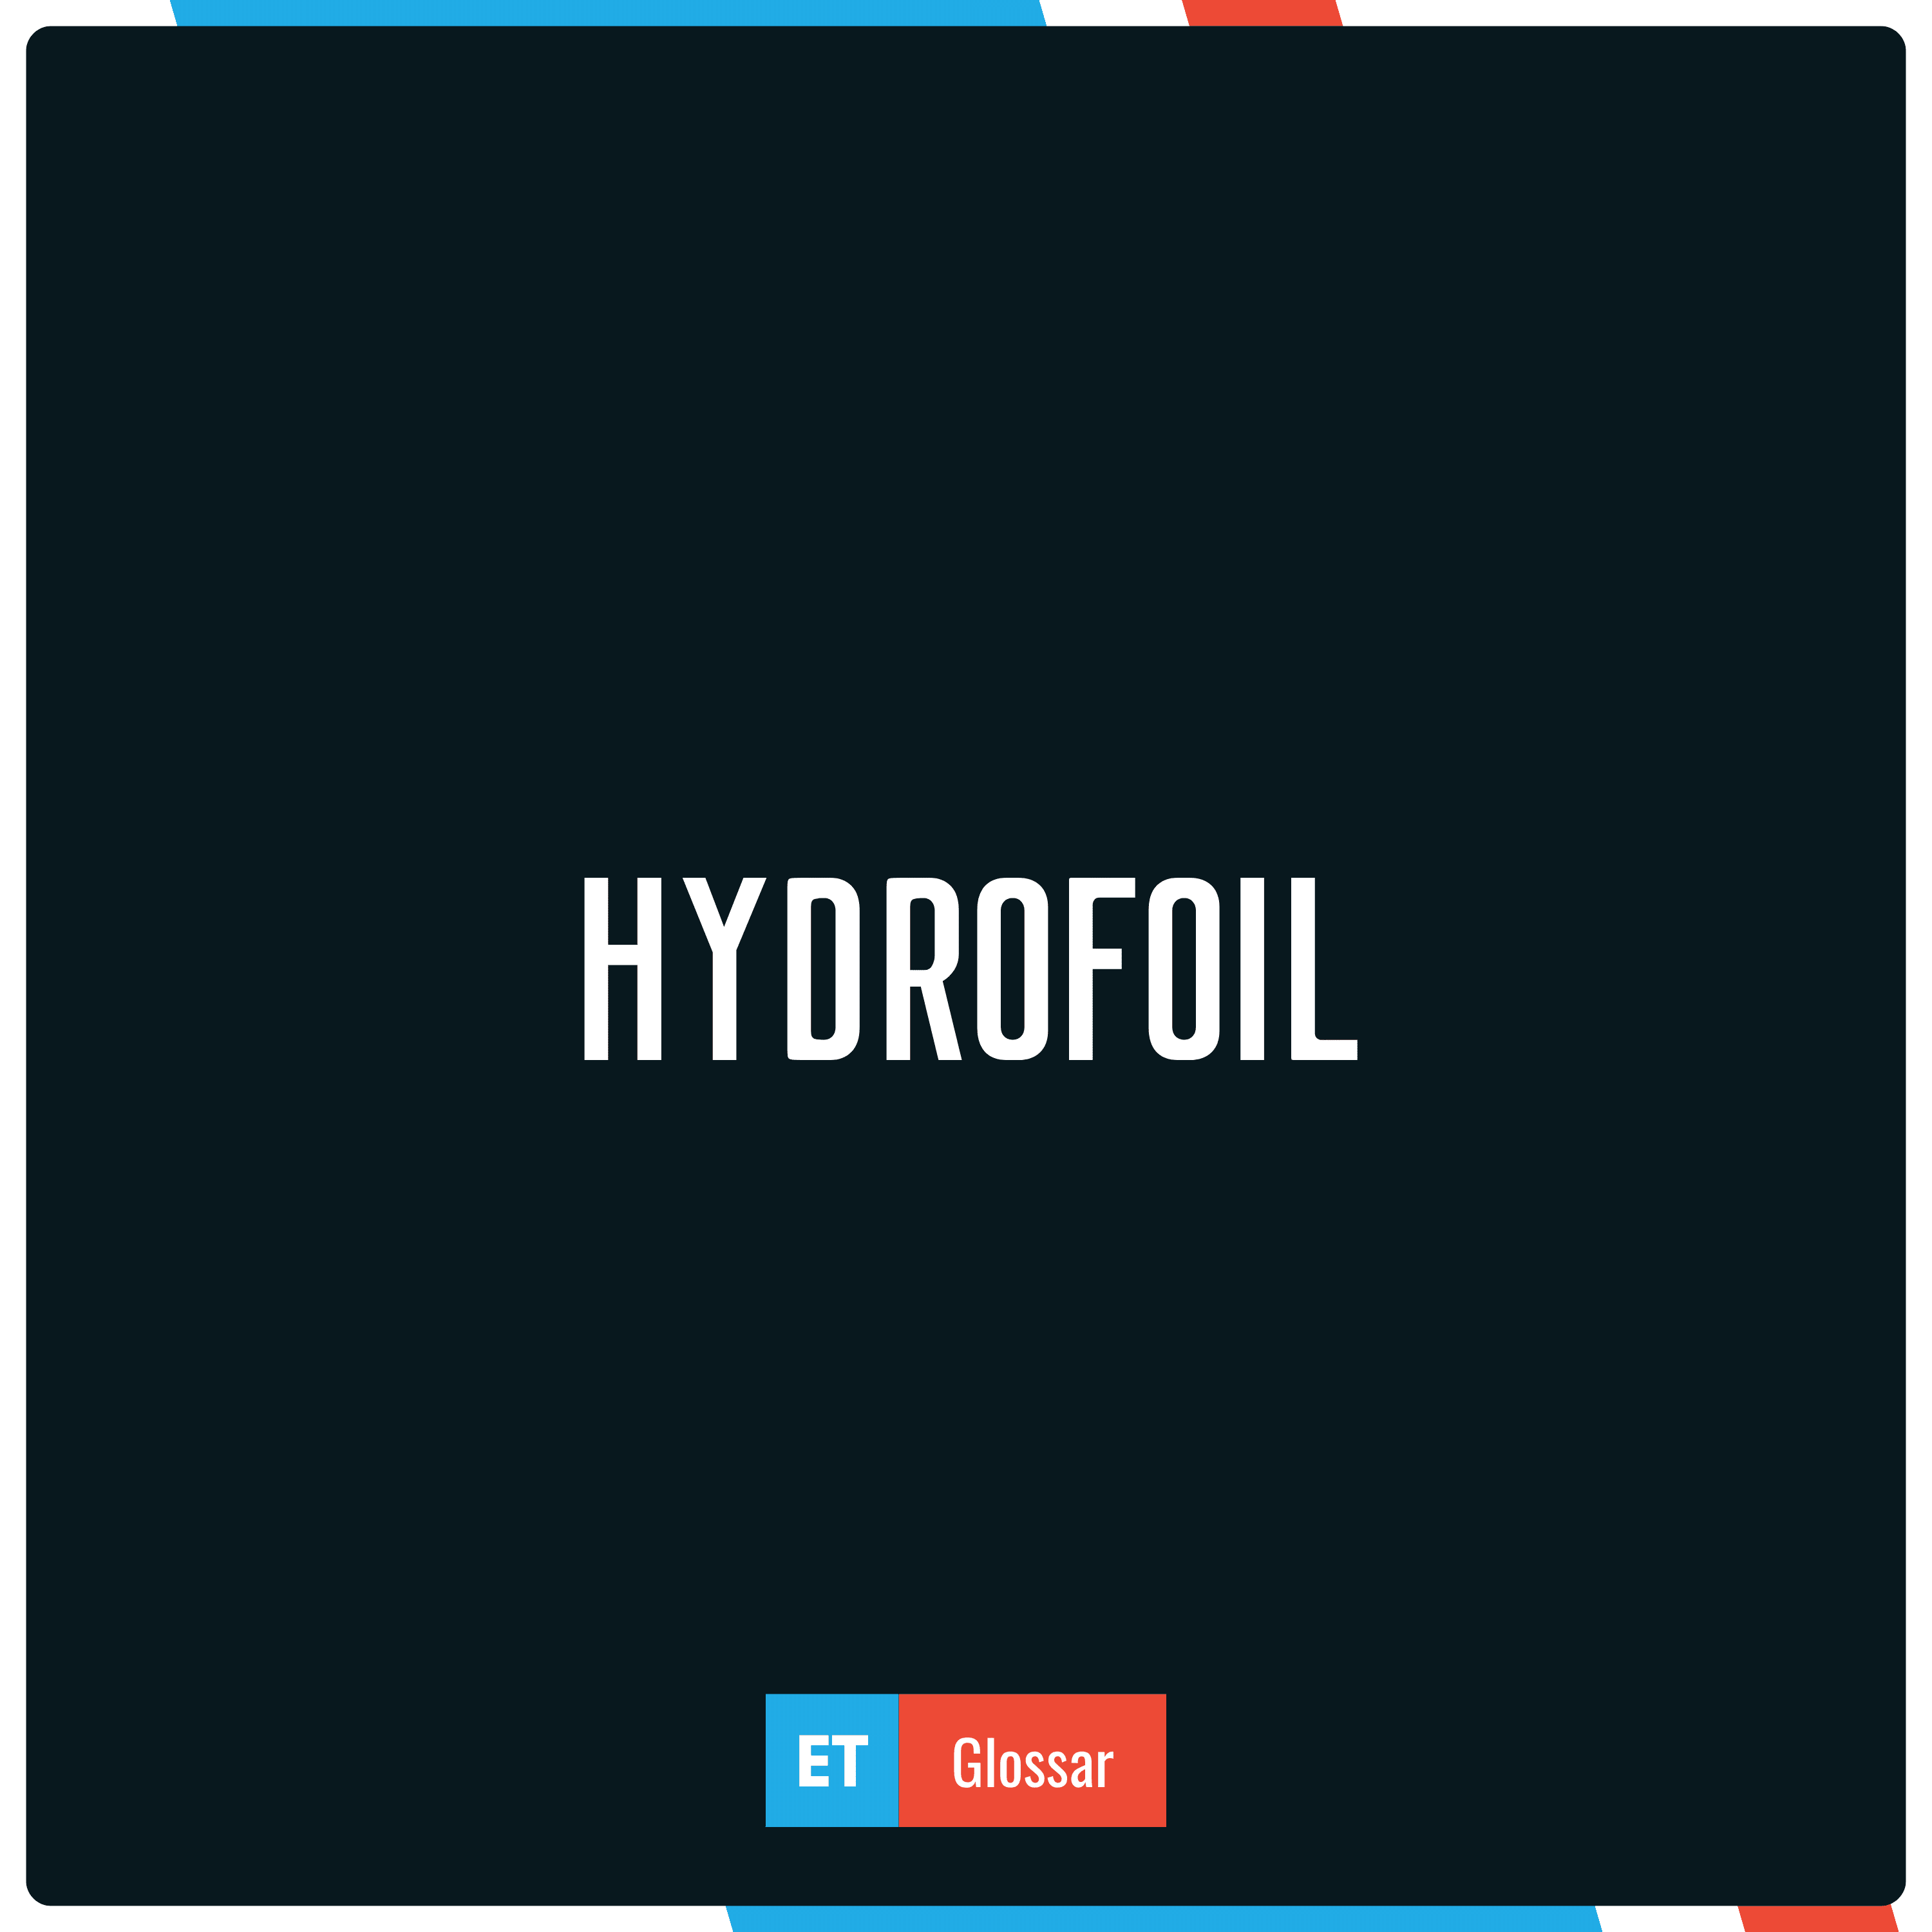 Der Begriff Hydrofoil einfach erklärt im Exciting Tech Glossar